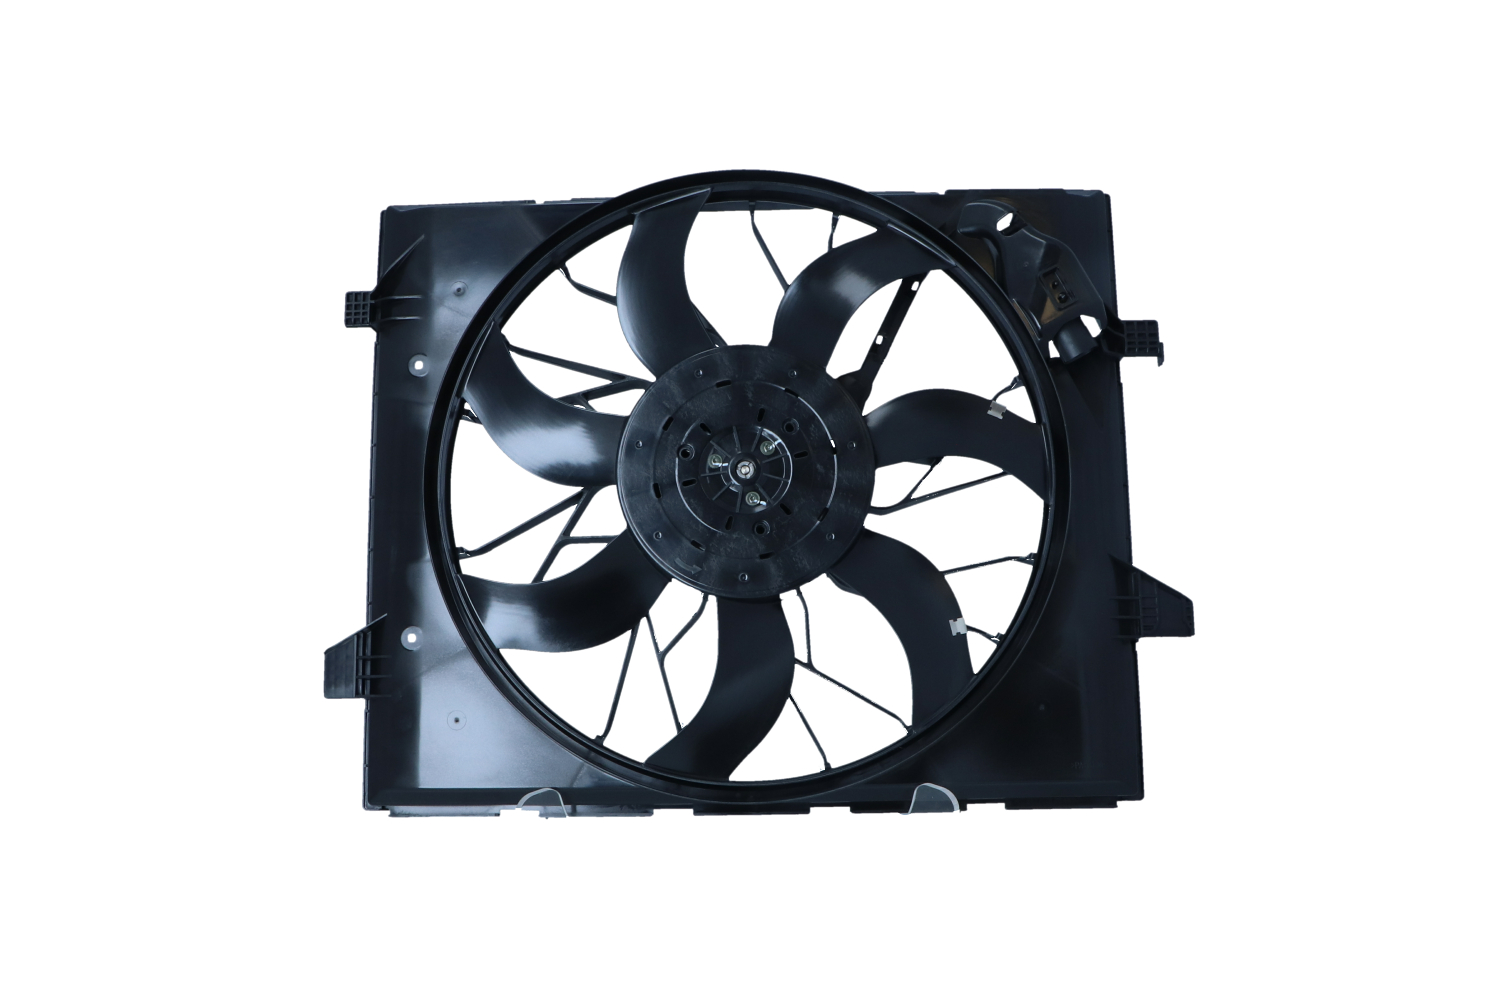 470037 NRF Cooling fan JEEP with radiator fan shroud, Brushless Motor